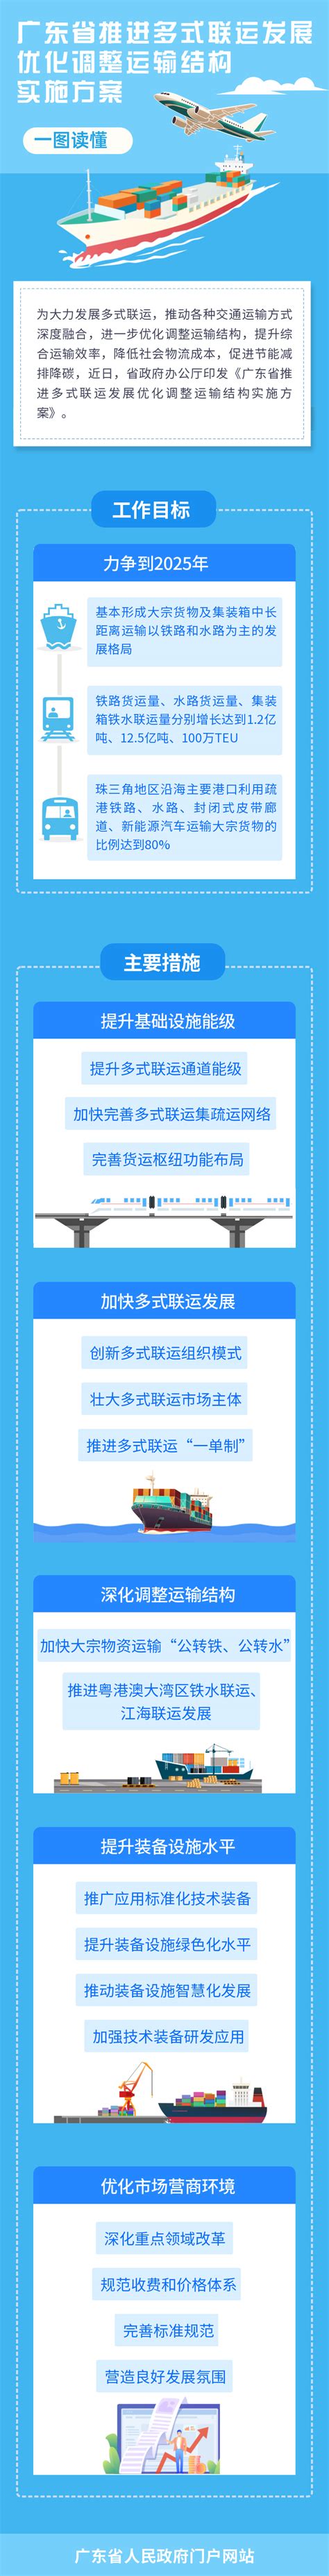 美焊MWF系列管路全自动焊接设备应用于广东省管道安装行业